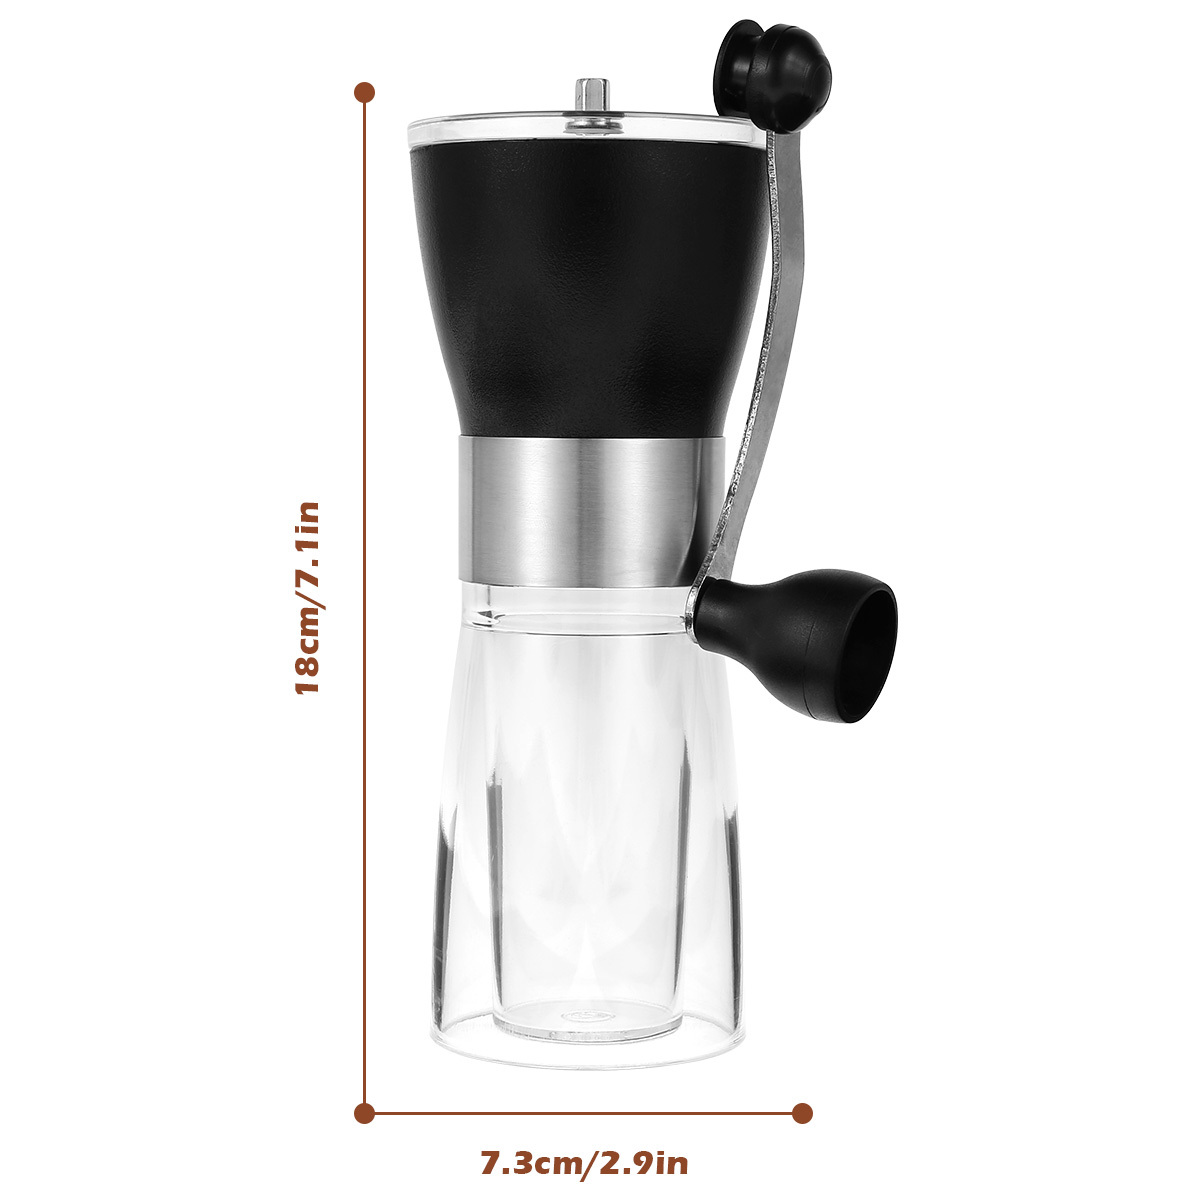 Molinillo de café – Molinillo de café manual con ajuste de engranaje  ajustable y rebaba cónica de cerámica, molinillo de mano para uso doméstico  y